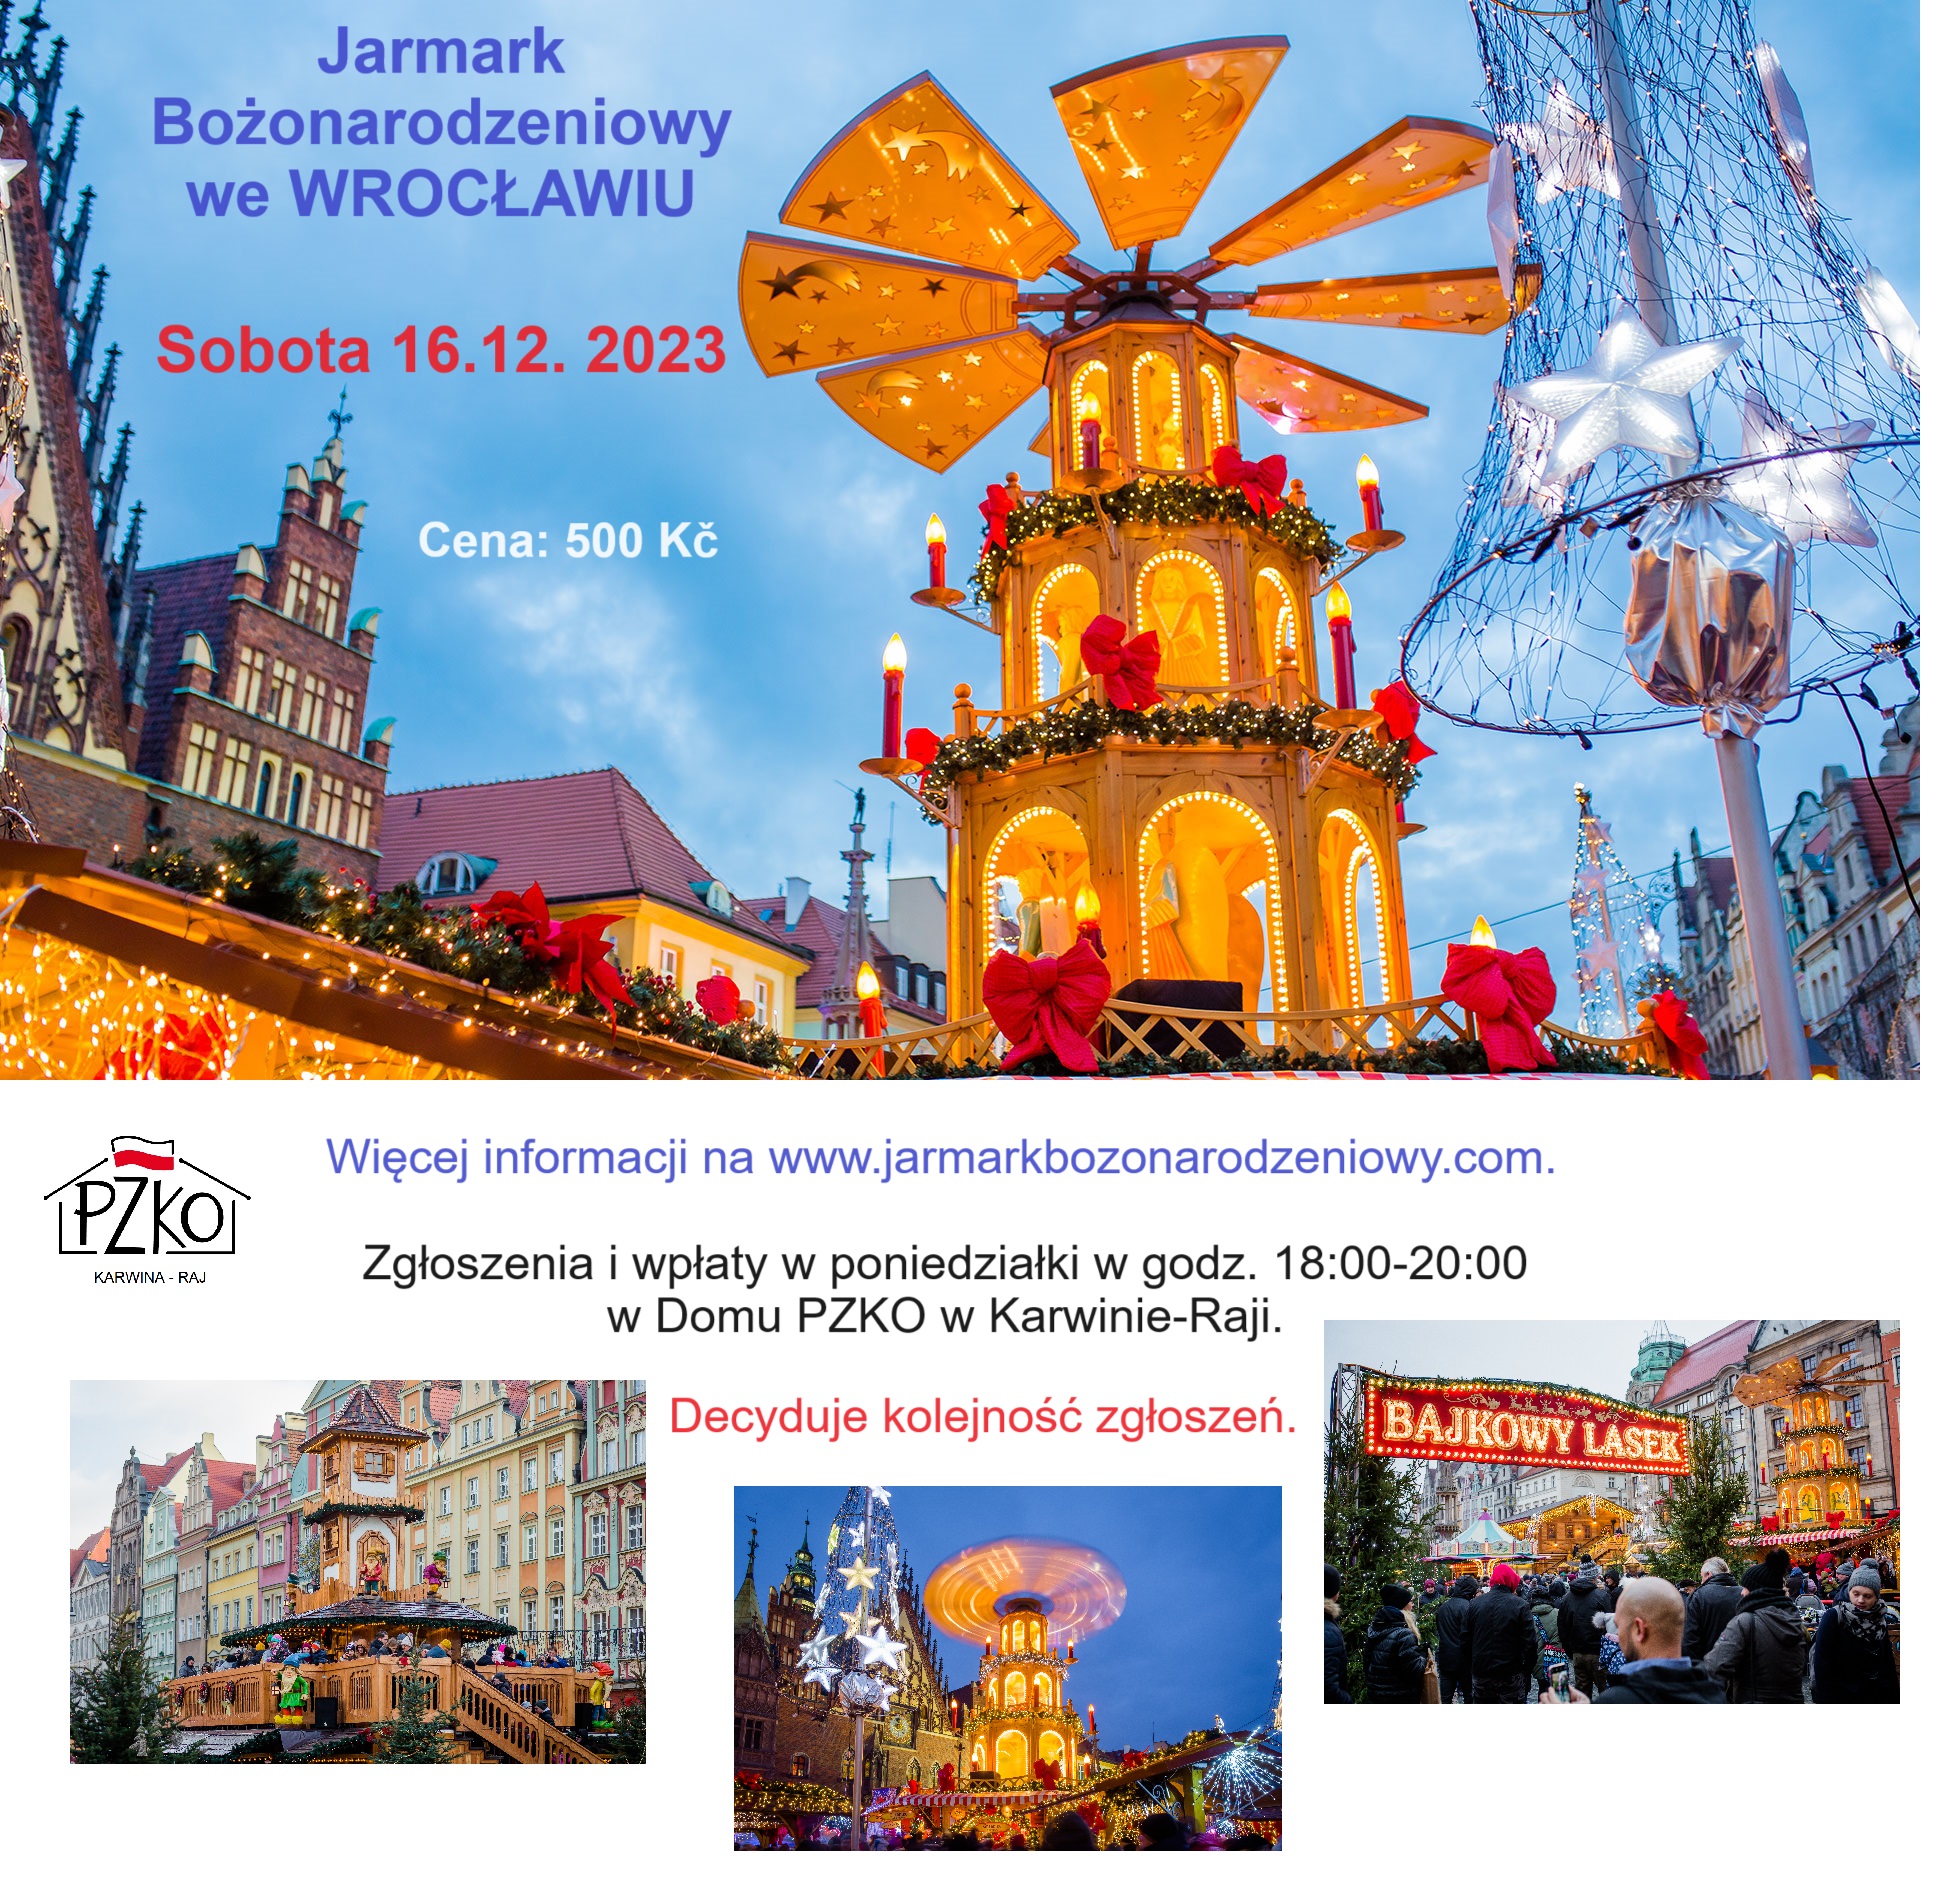 Wybierz się z nami na Jarmark Bożonarodzeniowy we Wrocławiu